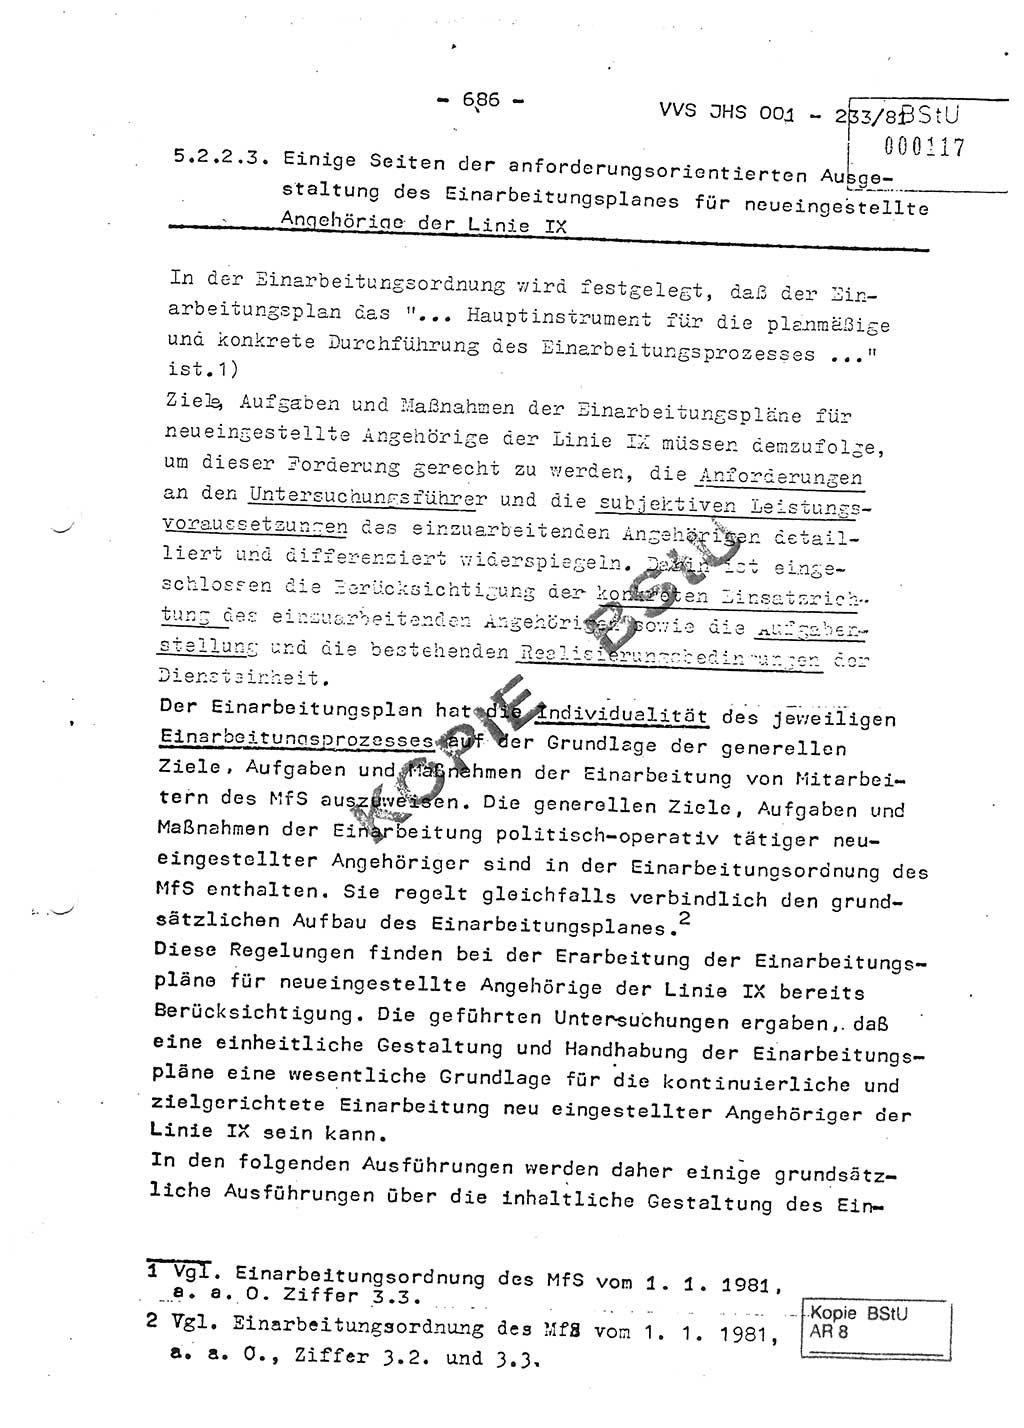 Dissertation Oberstleutnant Horst Zank (JHS), Oberstleutnant Dr. Karl-Heinz Knoblauch (JHS), Oberstleutnant Gustav-Adolf Kowalewski (HA Ⅸ), Oberstleutnant Wolfgang Plötner (HA Ⅸ), Ministerium für Staatssicherheit (MfS) [Deutsche Demokratische Republik (DDR)], Juristische Hochschule (JHS), Vertrauliche Verschlußsache (VVS) o001-233/81, Potsdam 1981, Blatt 686 (Diss. MfS DDR JHS VVS o001-233/81 1981, Bl. 686)